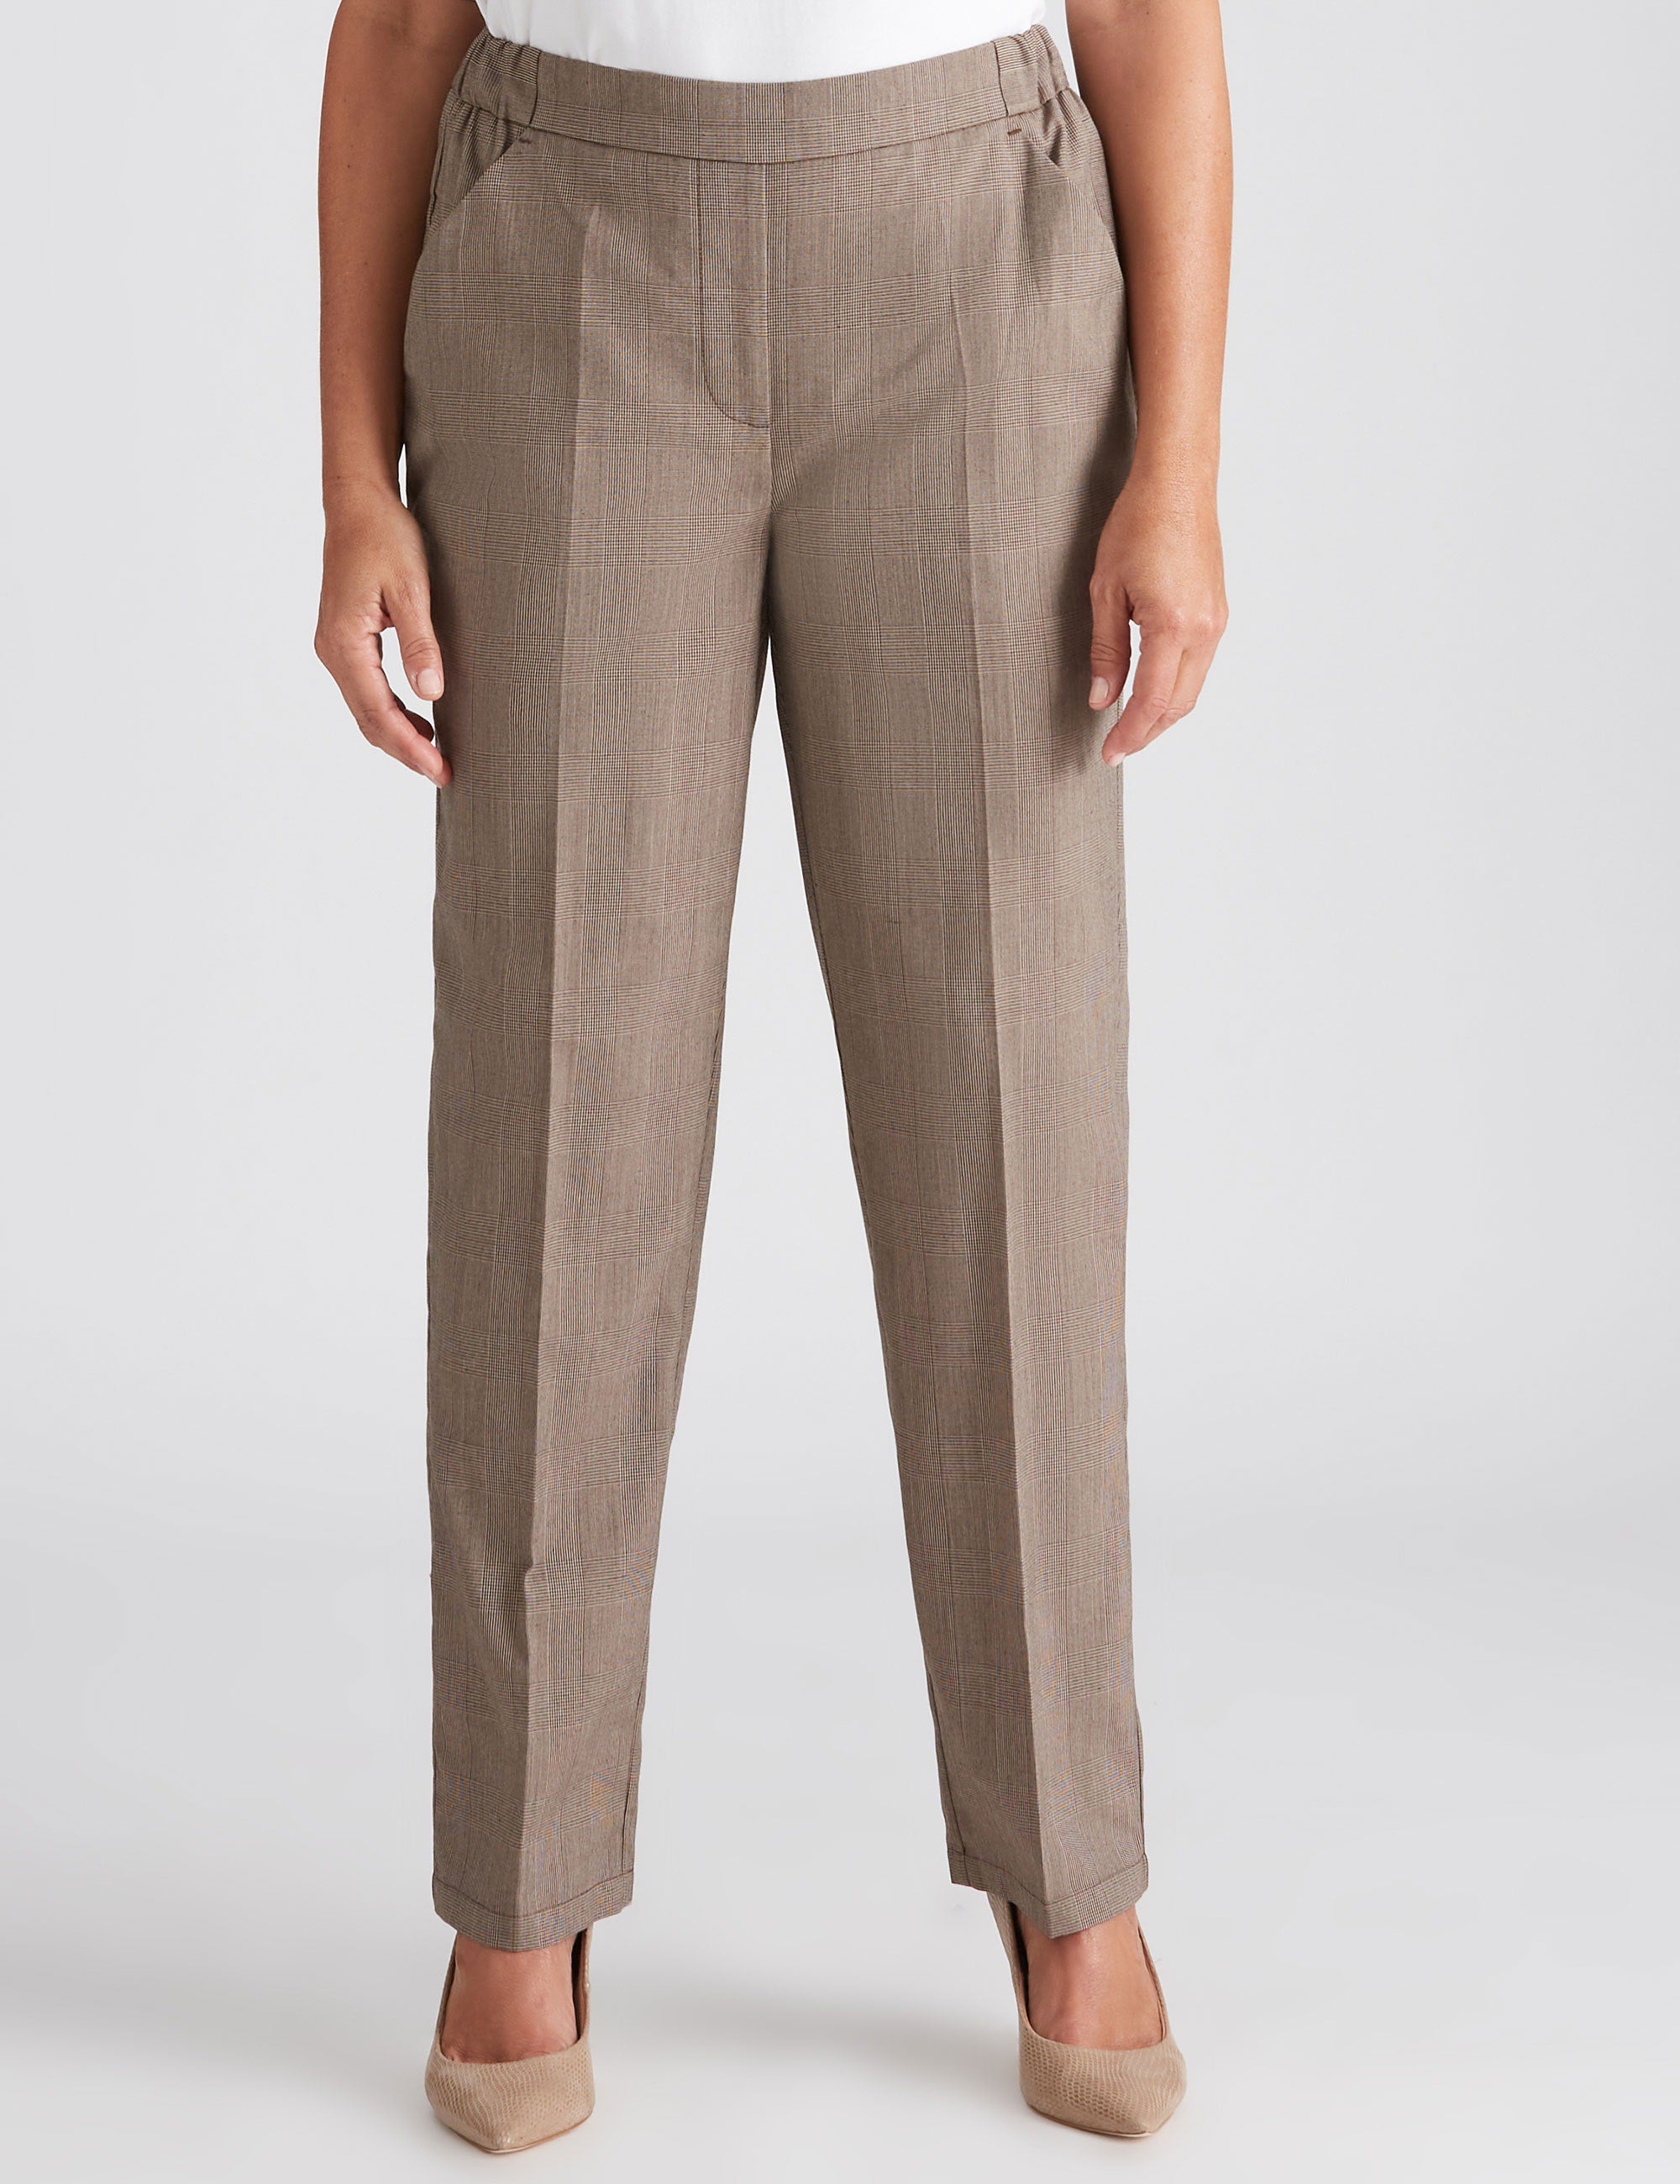 Women's Millers Regular Length Essential Pant | Buy Pants & Leggings ...